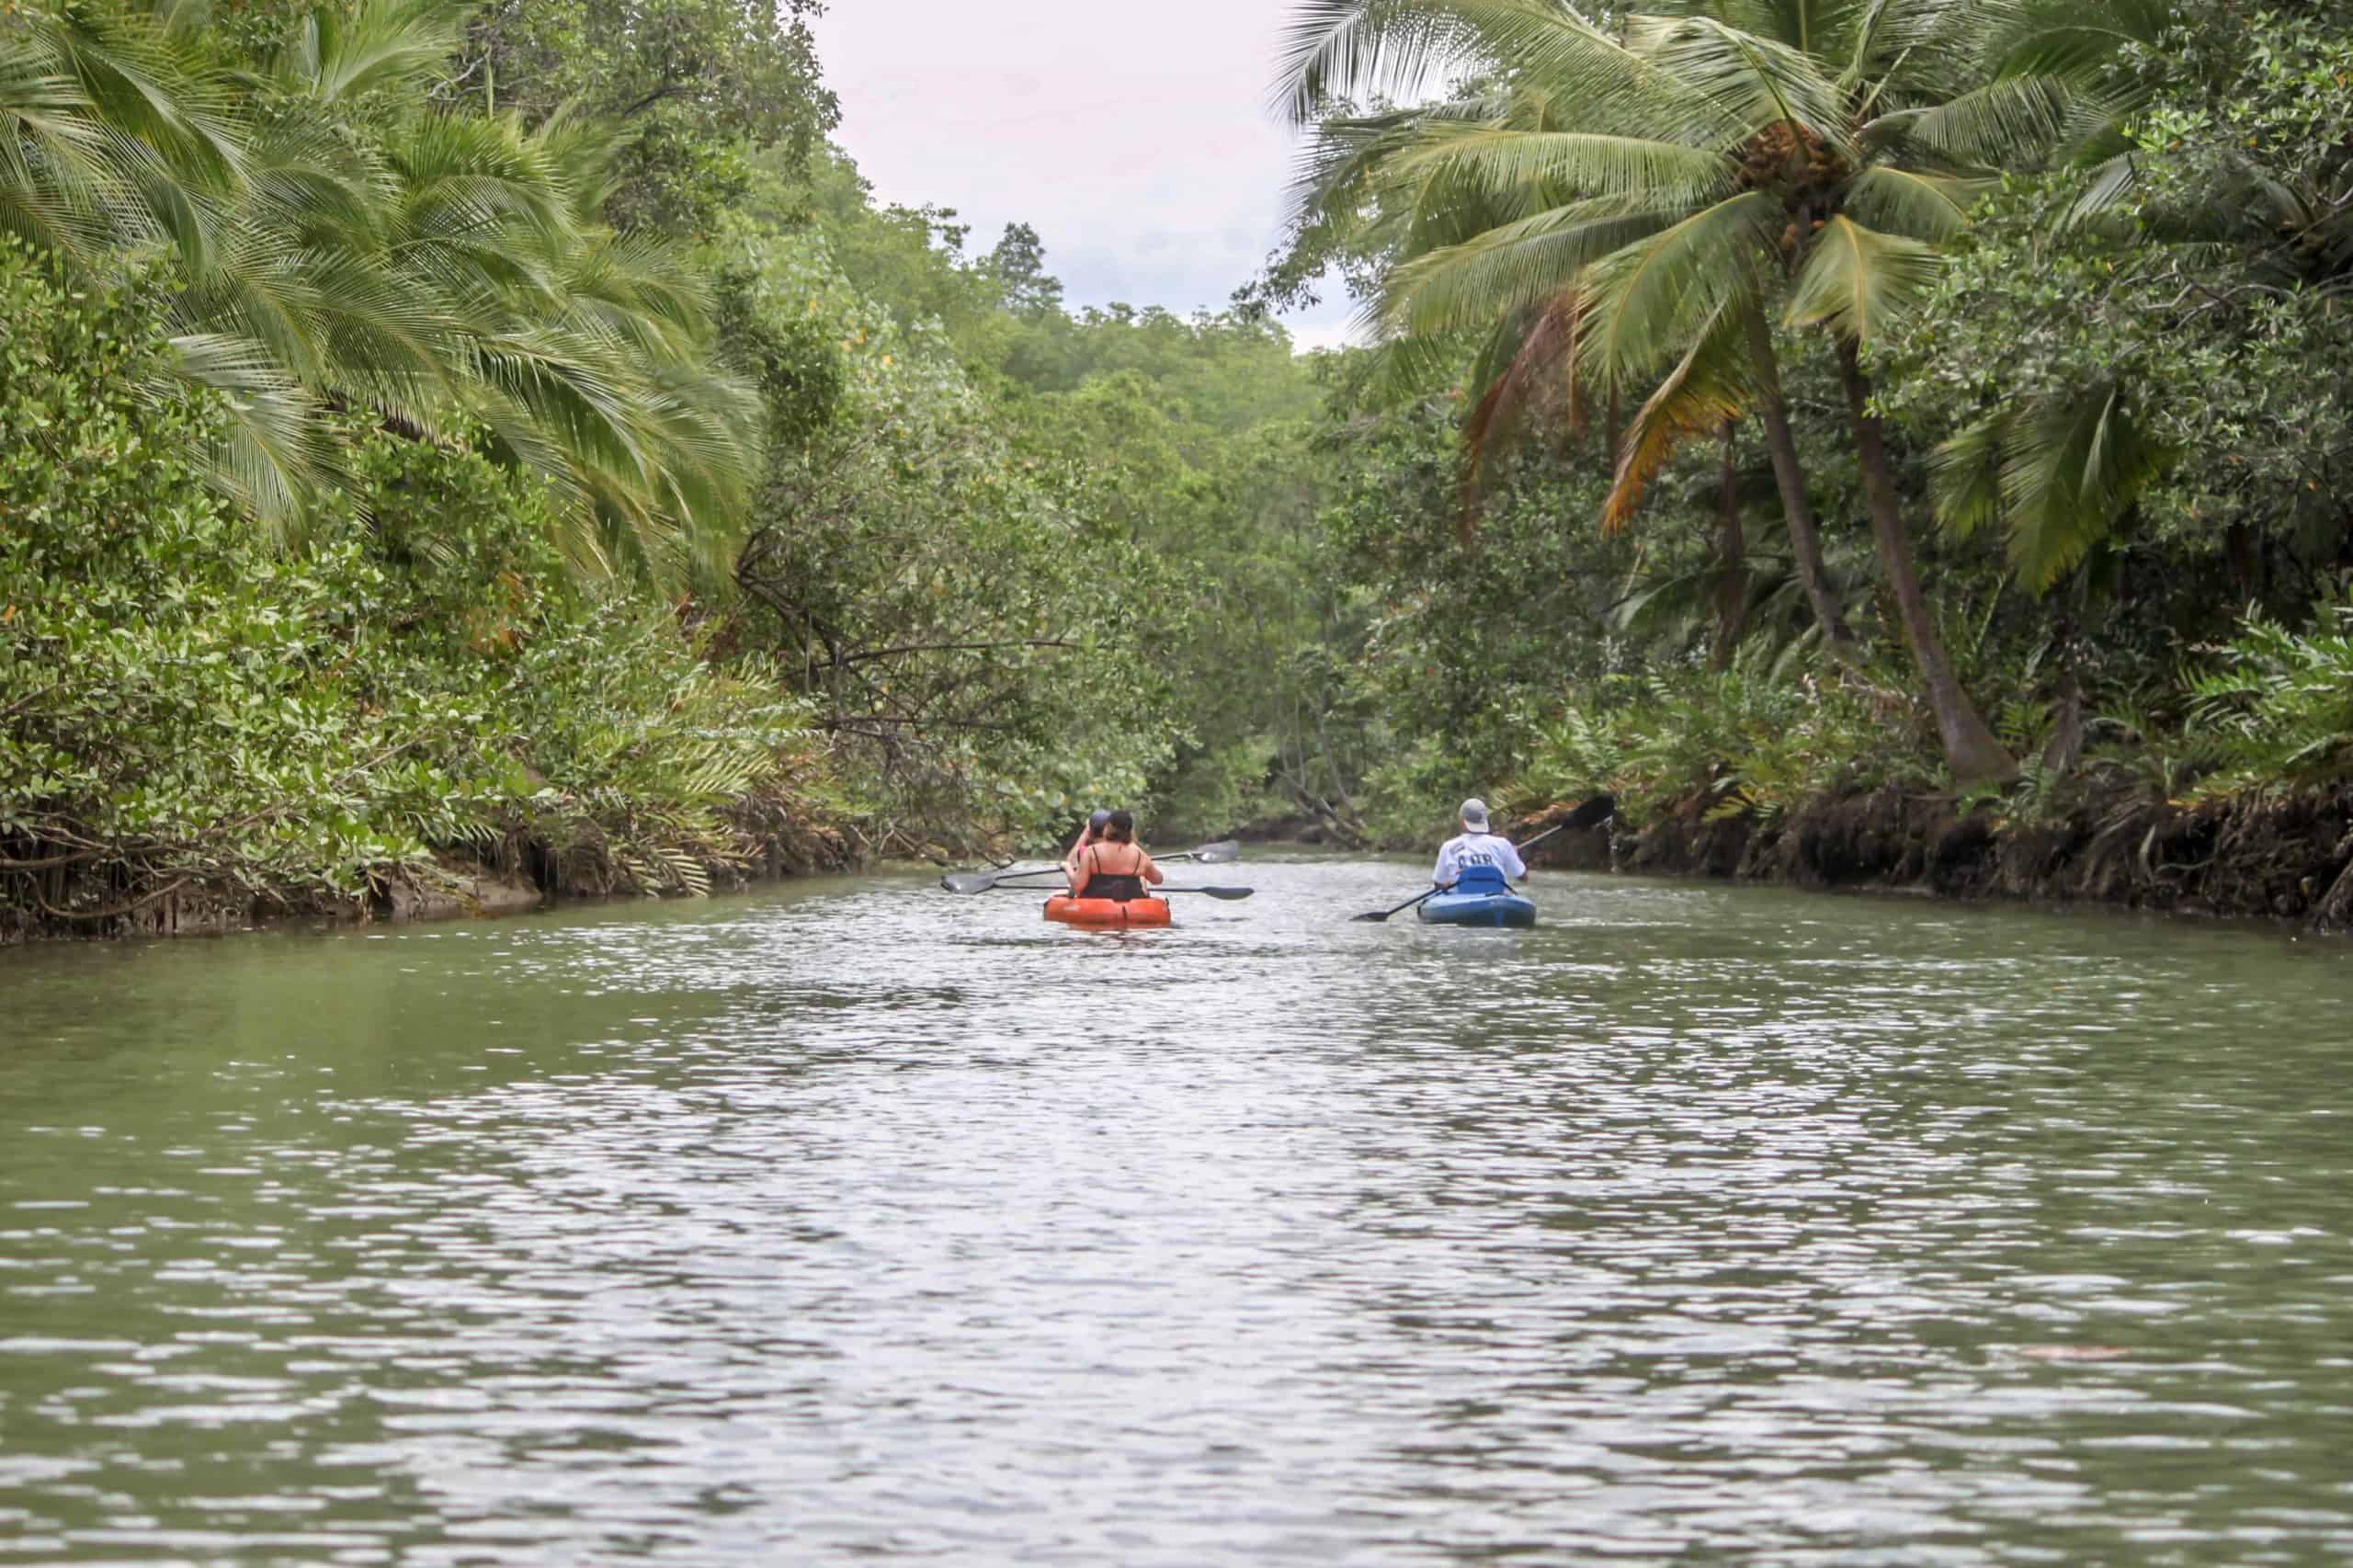 Kayaing the Isla Damas Mangroves